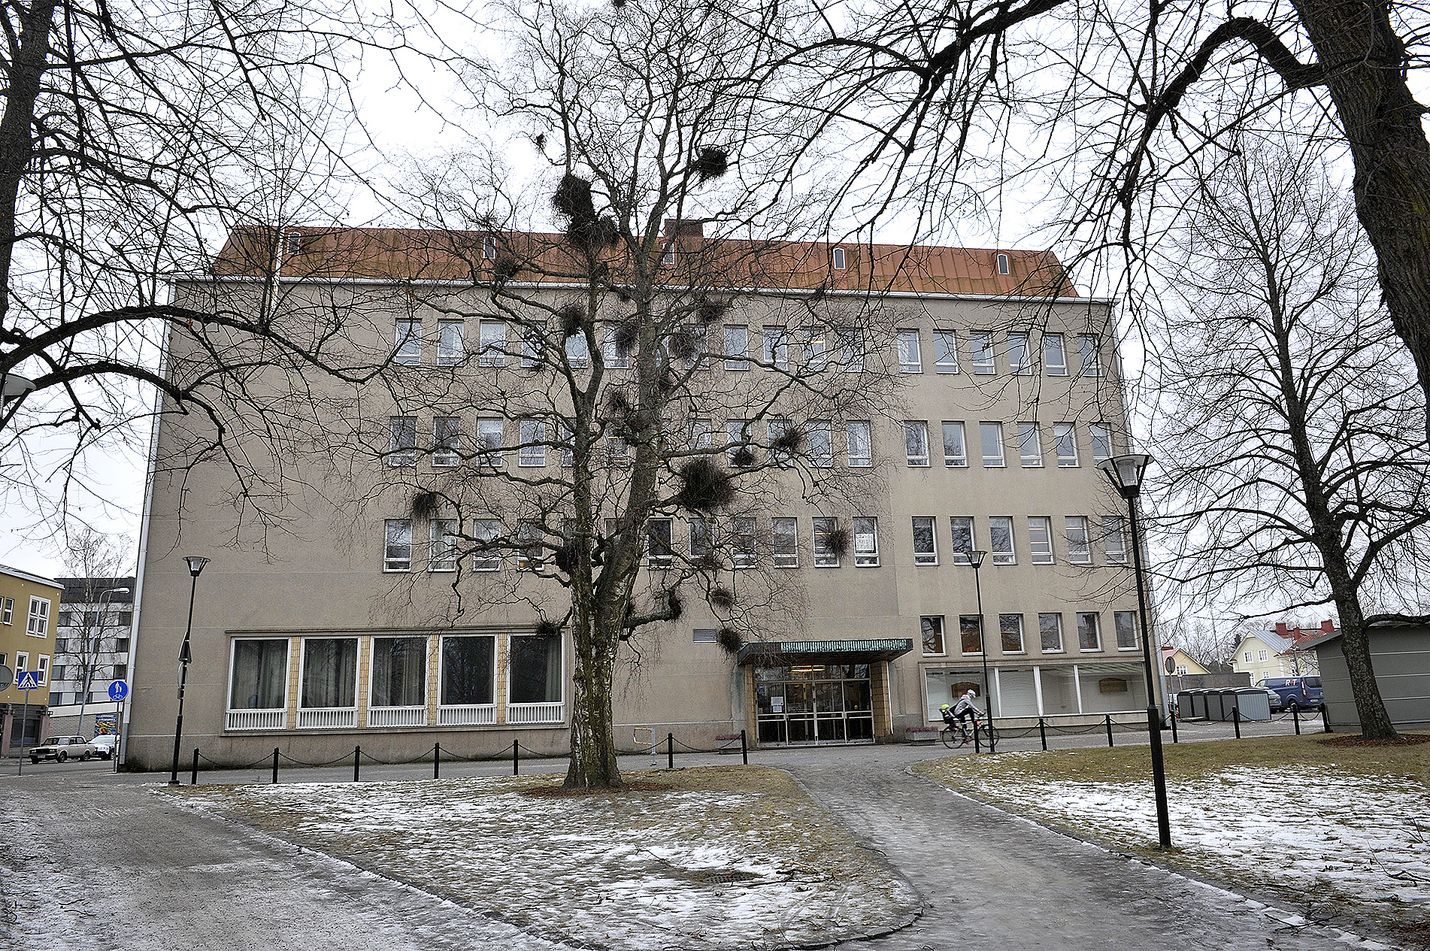 Ankkuripuiston koulu Rauman keskustassa Nortamonkadun varrella jää vaille käyttöä, kun Karin kampus valmistuu ja musiikkiopisto muuttaa.